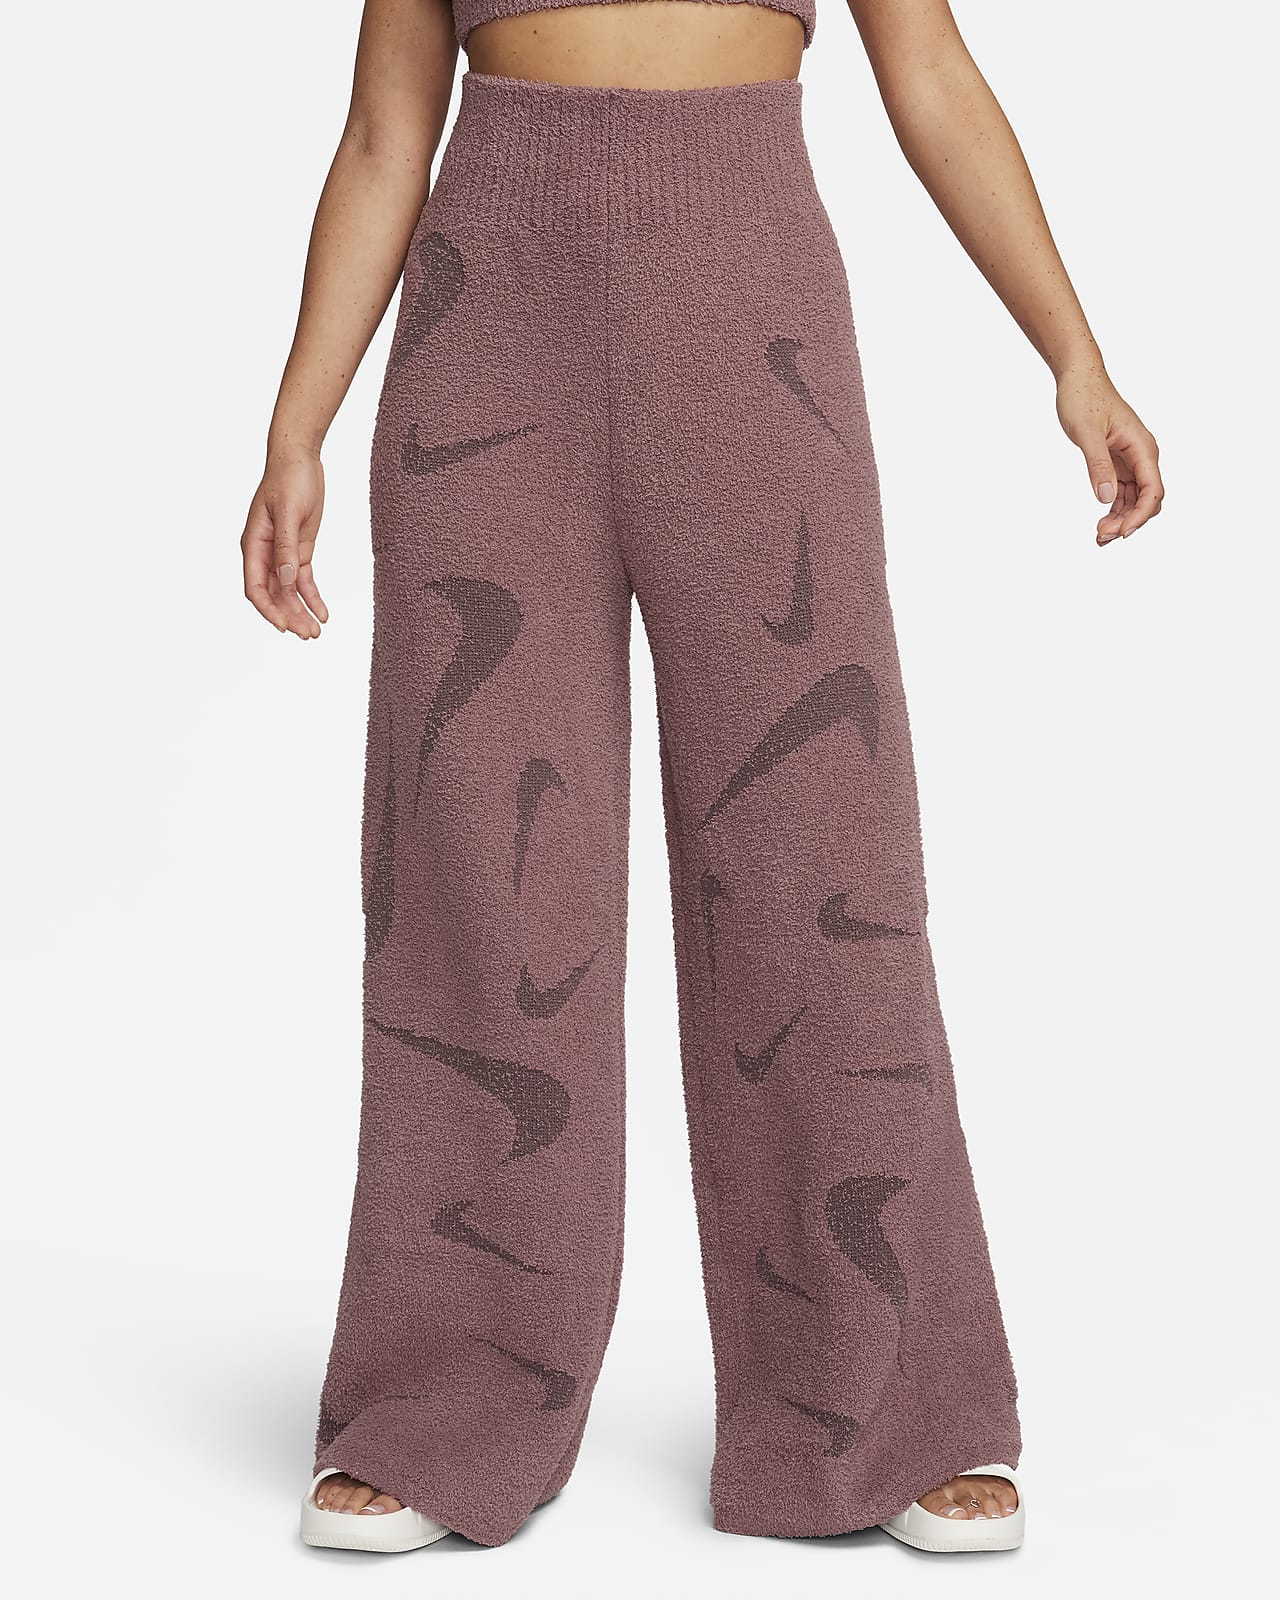 Γυναικείο ψηλόμεσο πλεκτό παντελόνι με φαρδιά μπατζάκια Nike Sportswear Phoenix Cozy Bouclé